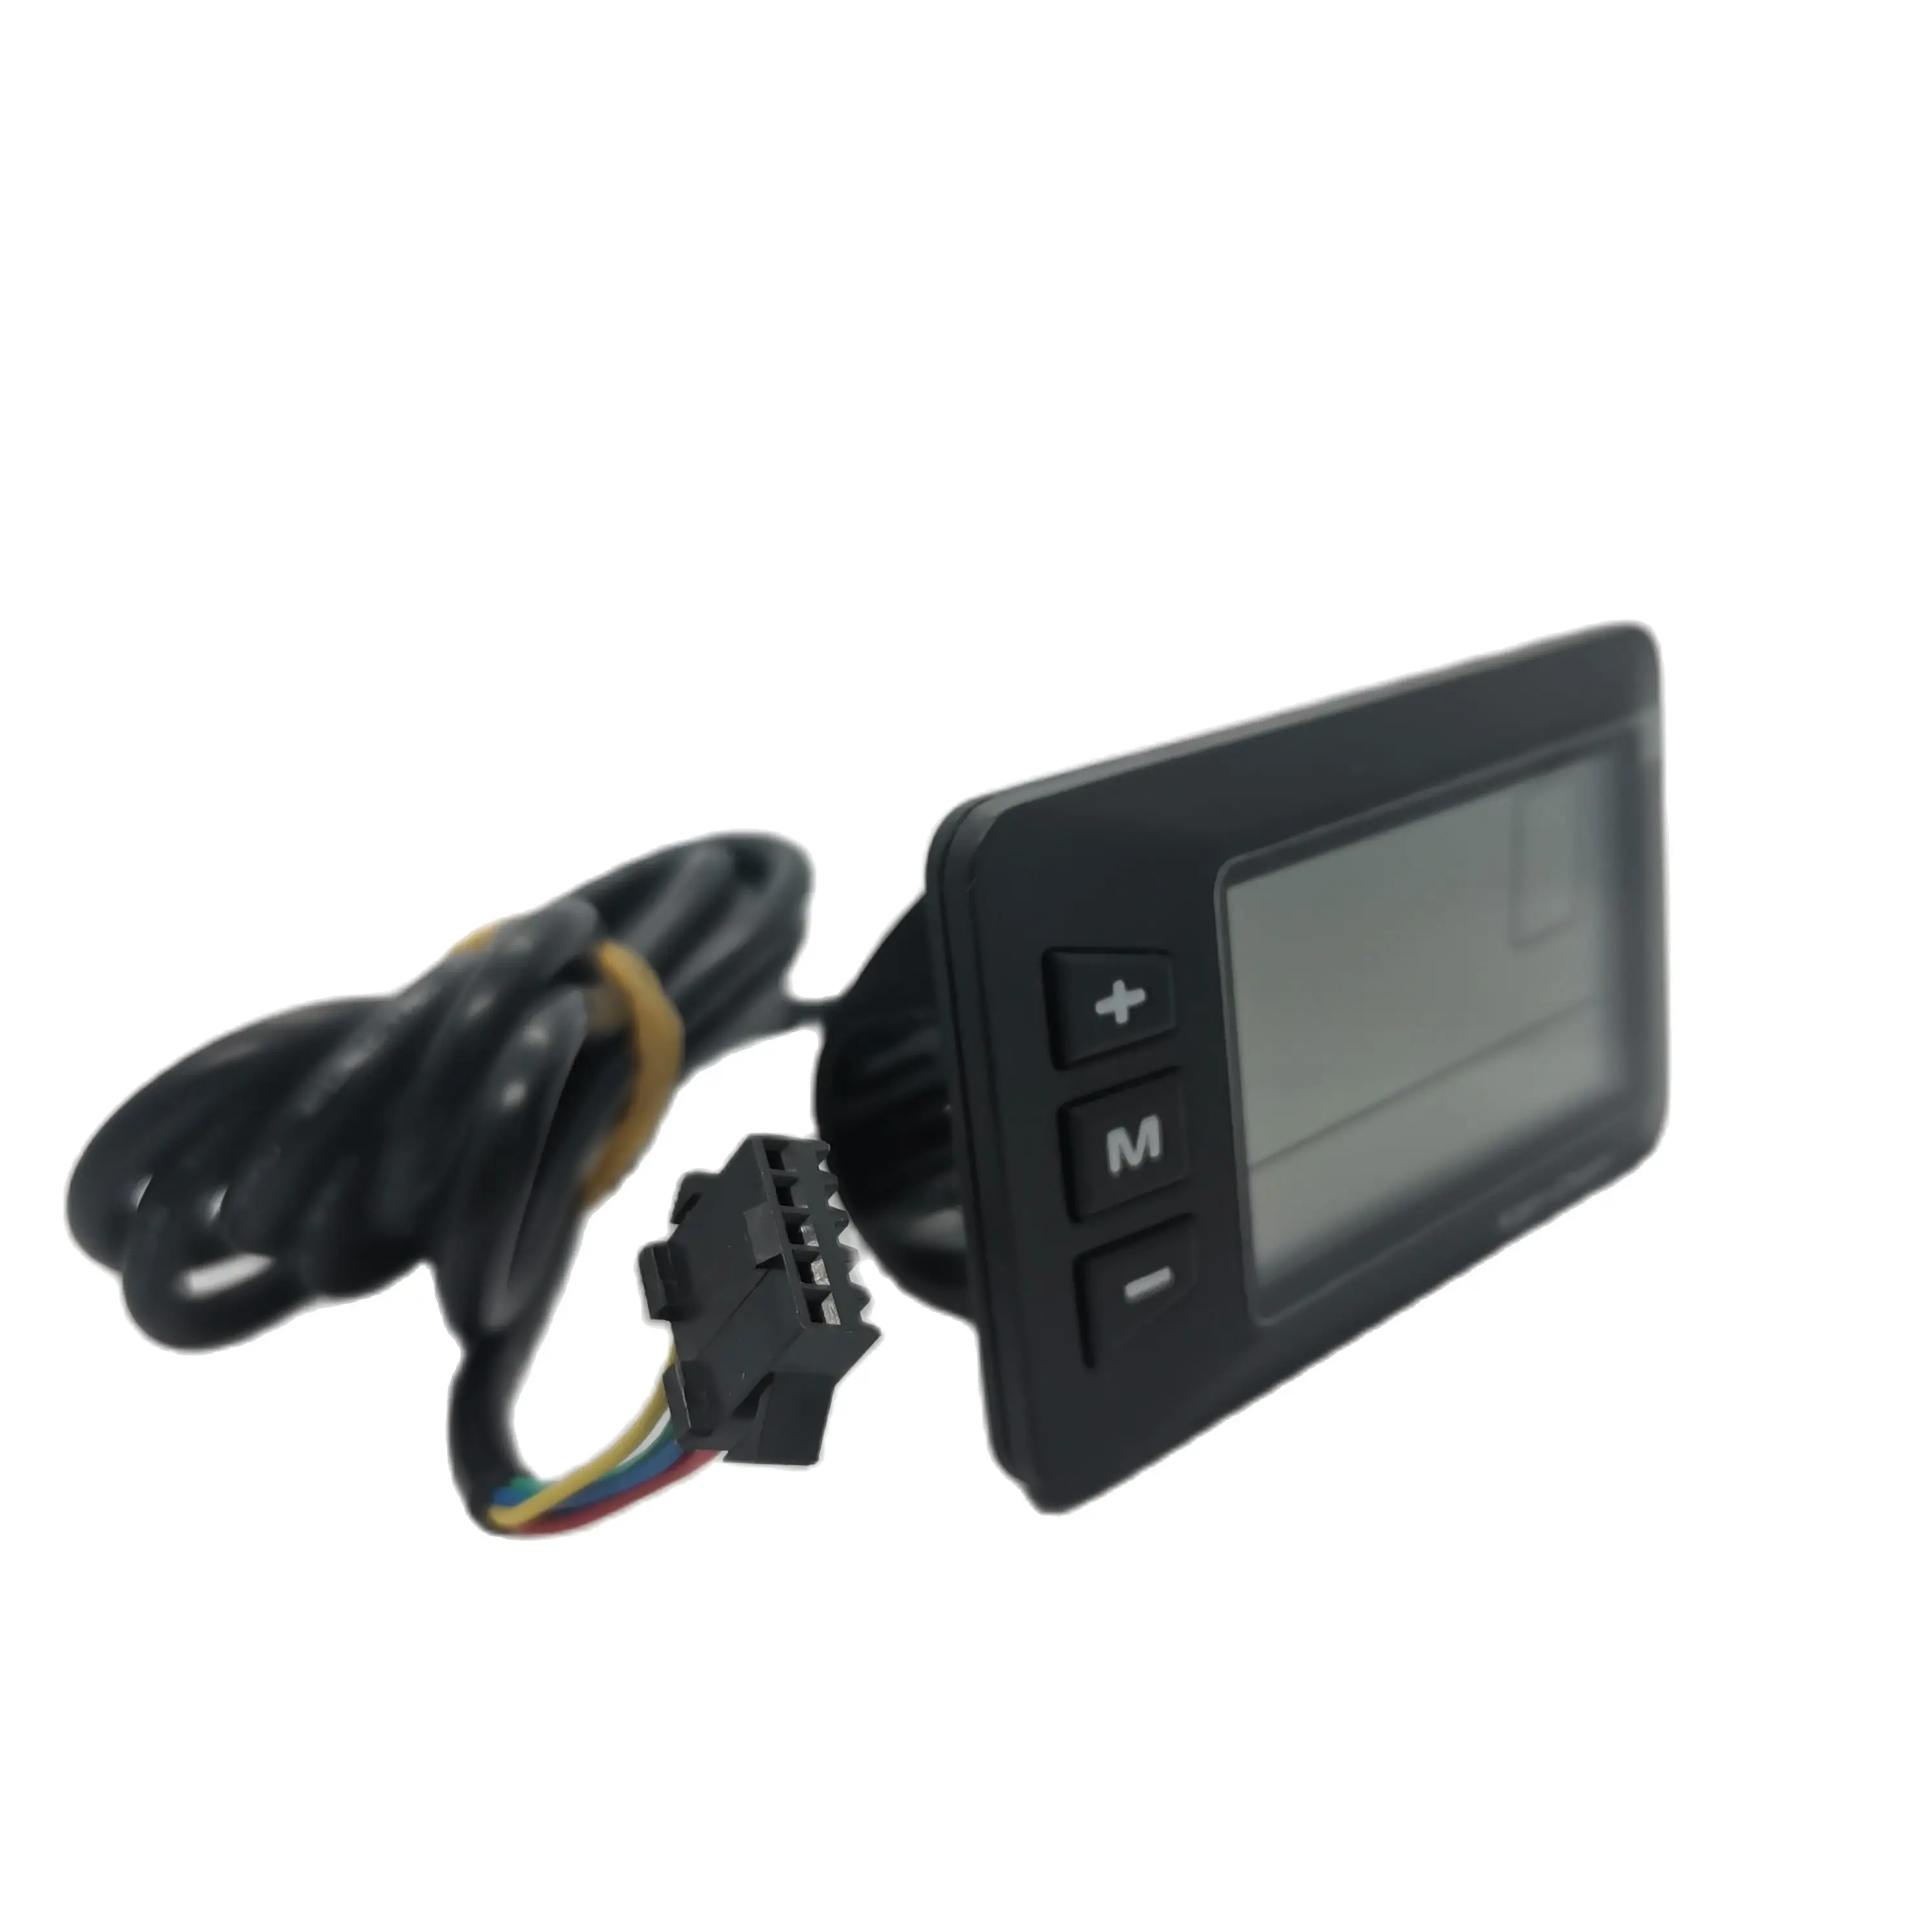 

ЖК-дисплей KEY DISP KD21C Ancheer, приборный монитор для электровелосипеда, сменные детали, панель Bafang LED TFT Kit